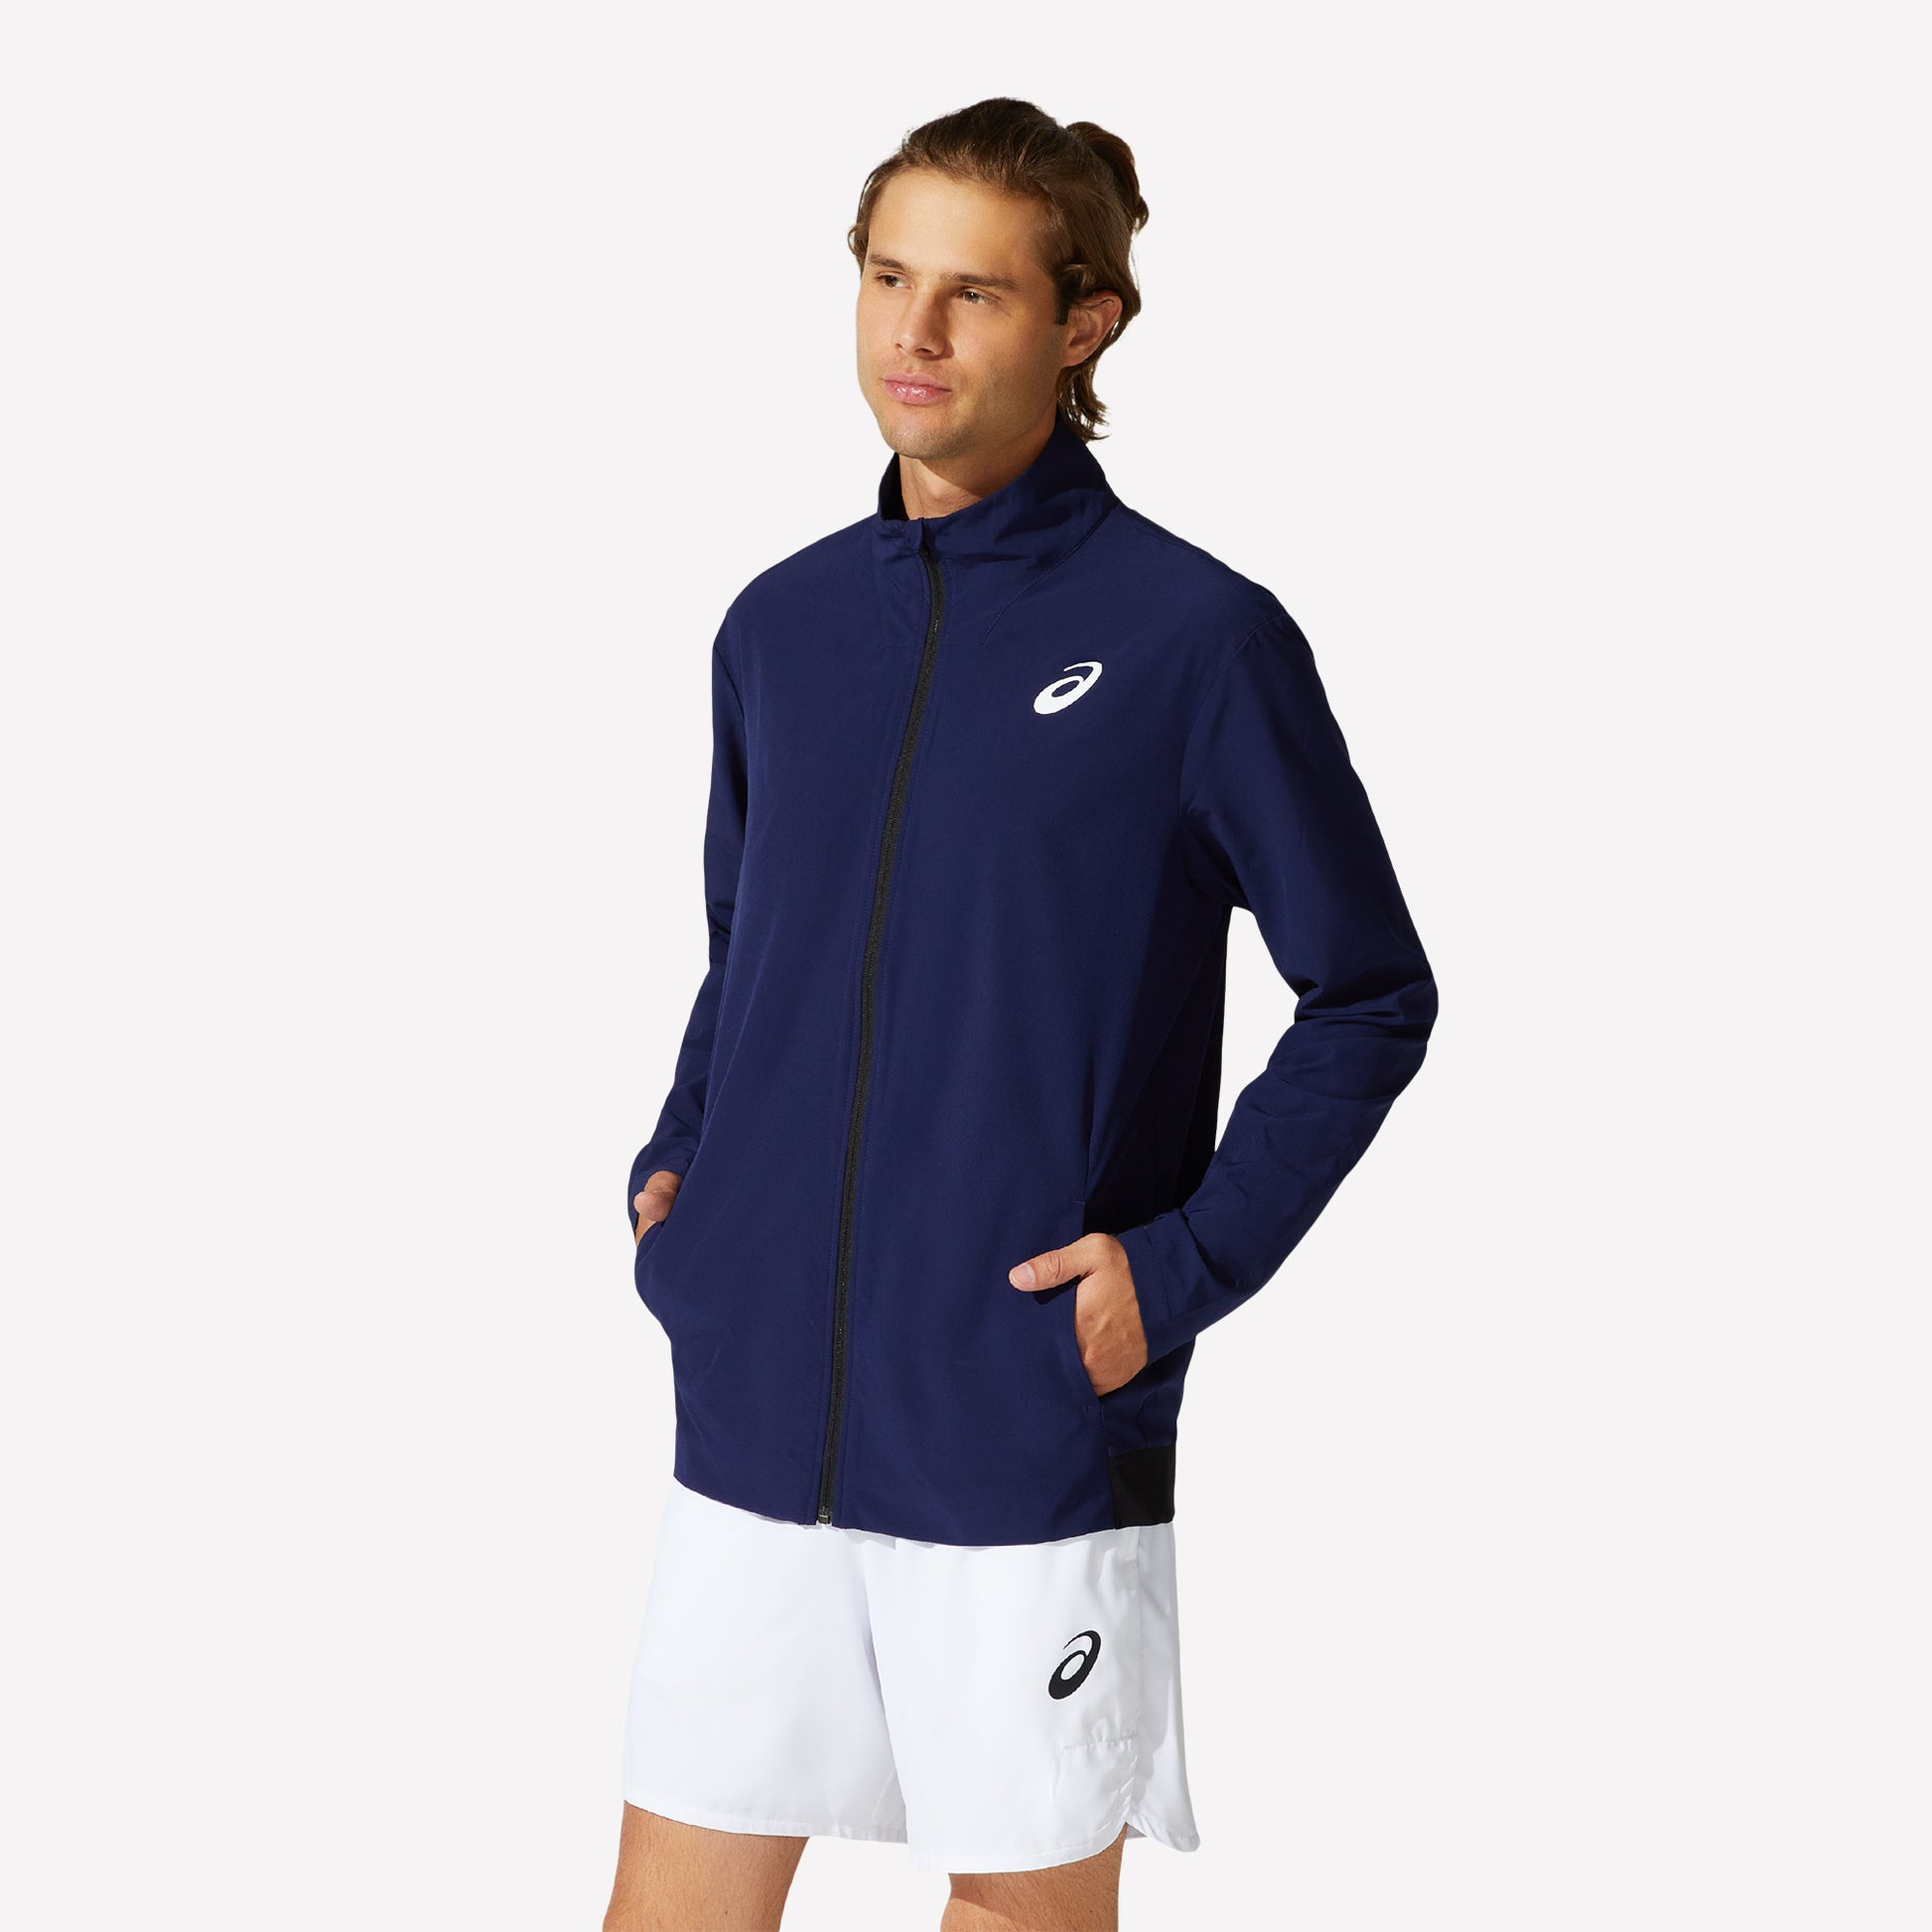 ASICS Match Men's Woven Tennis Jacket Blue (1)